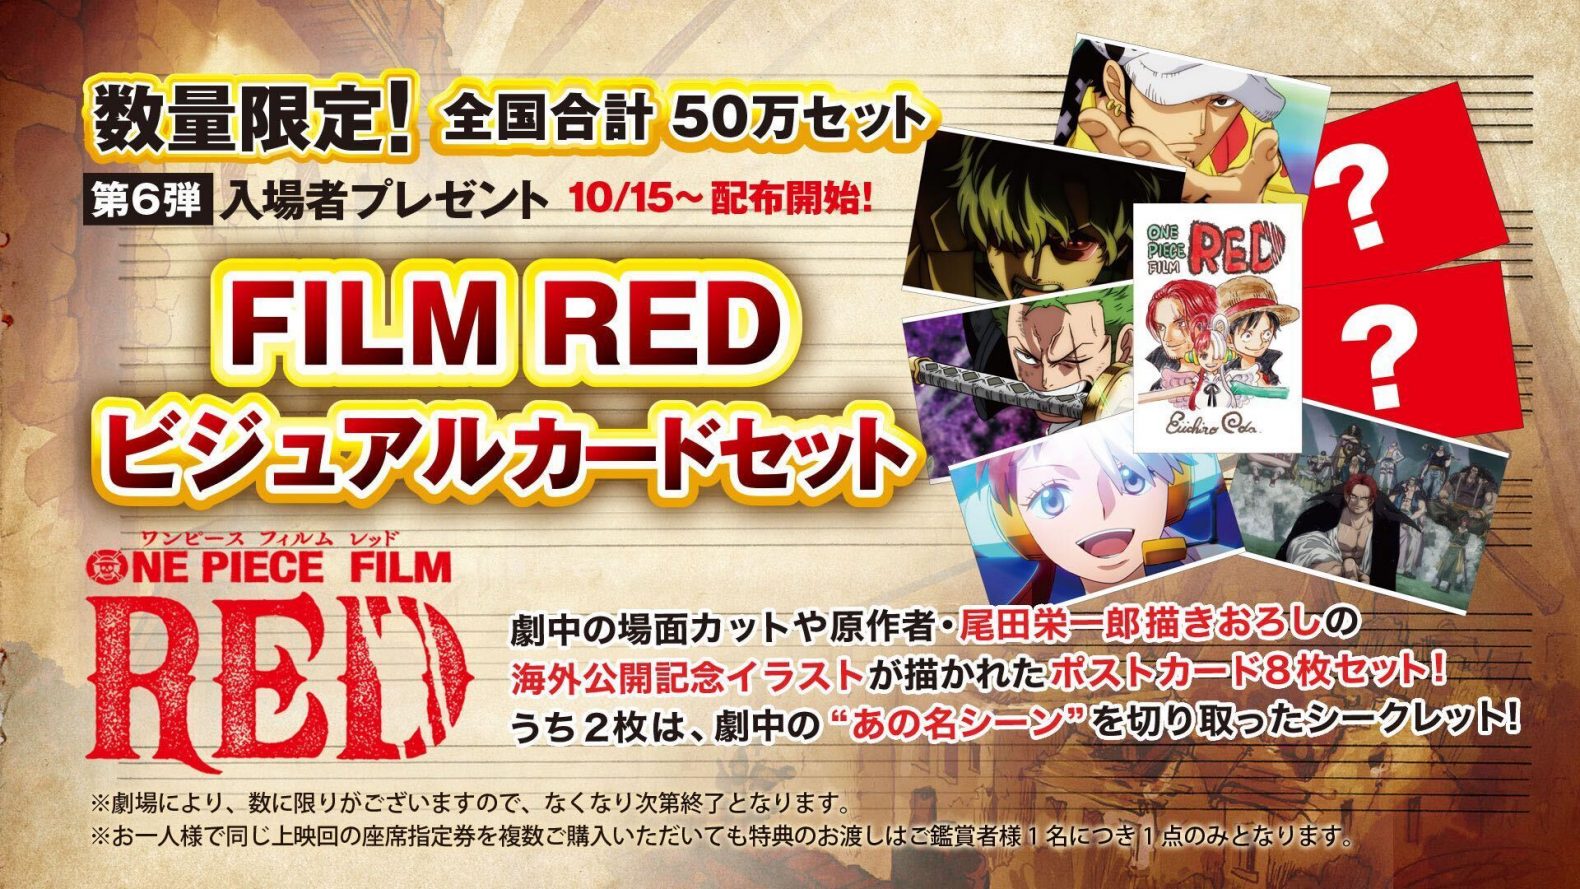 ワンピース FILM RED 映画特典  キラキラ缶バッジ カード  詰め合わせ